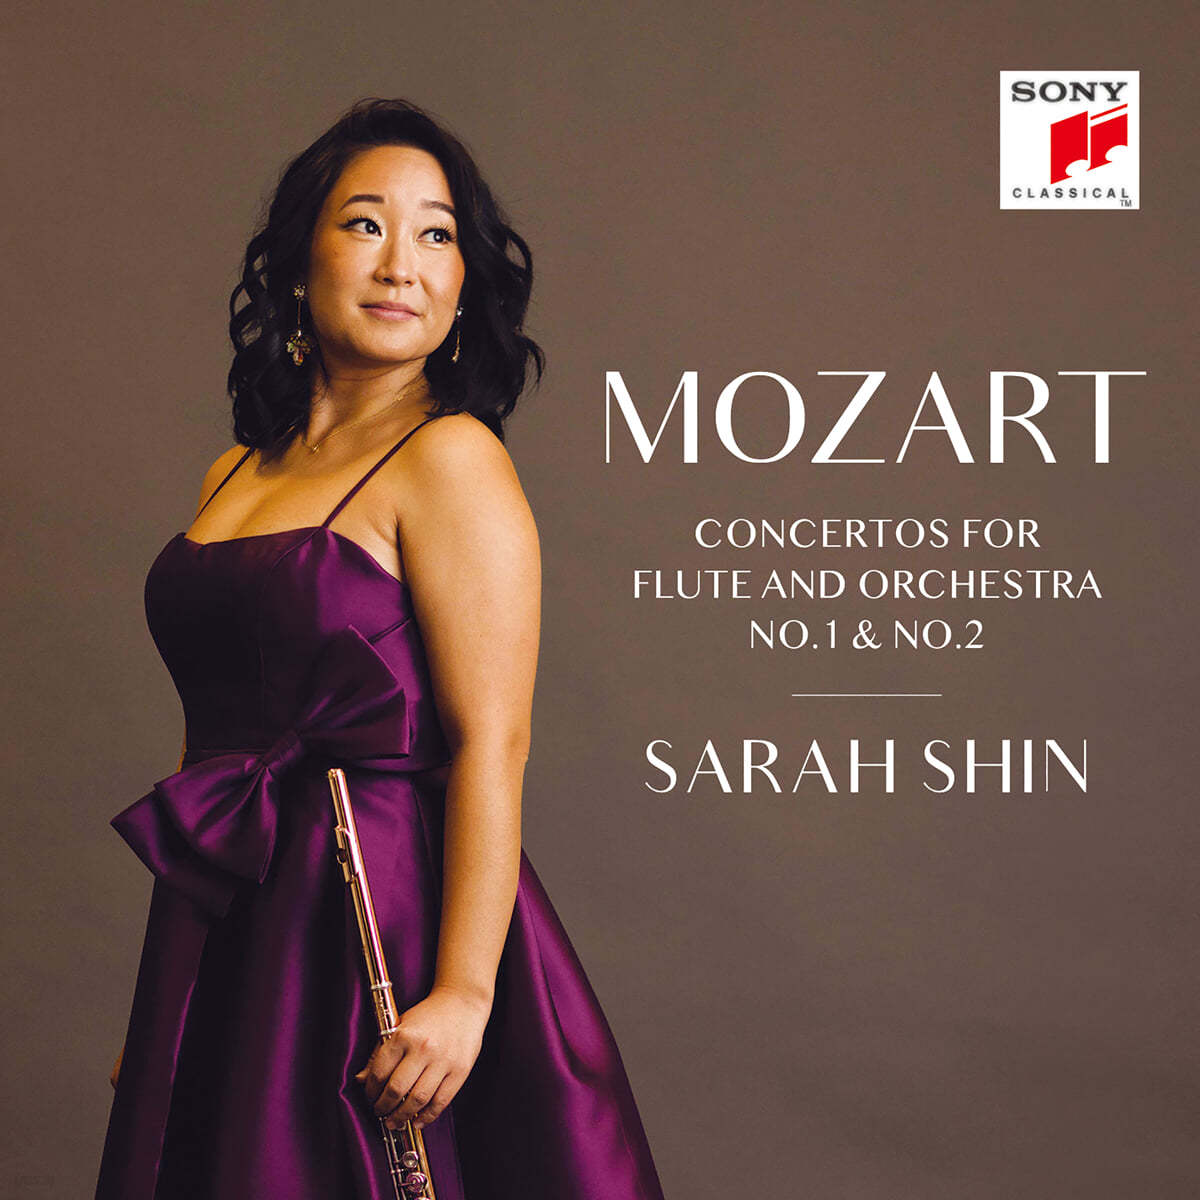 신사라 (Sarah Shin) - 모차르트: 플루트 협주곡 1번, 2번 (Mozart: Concertos for Flute and Orchestra K.313, K.314)